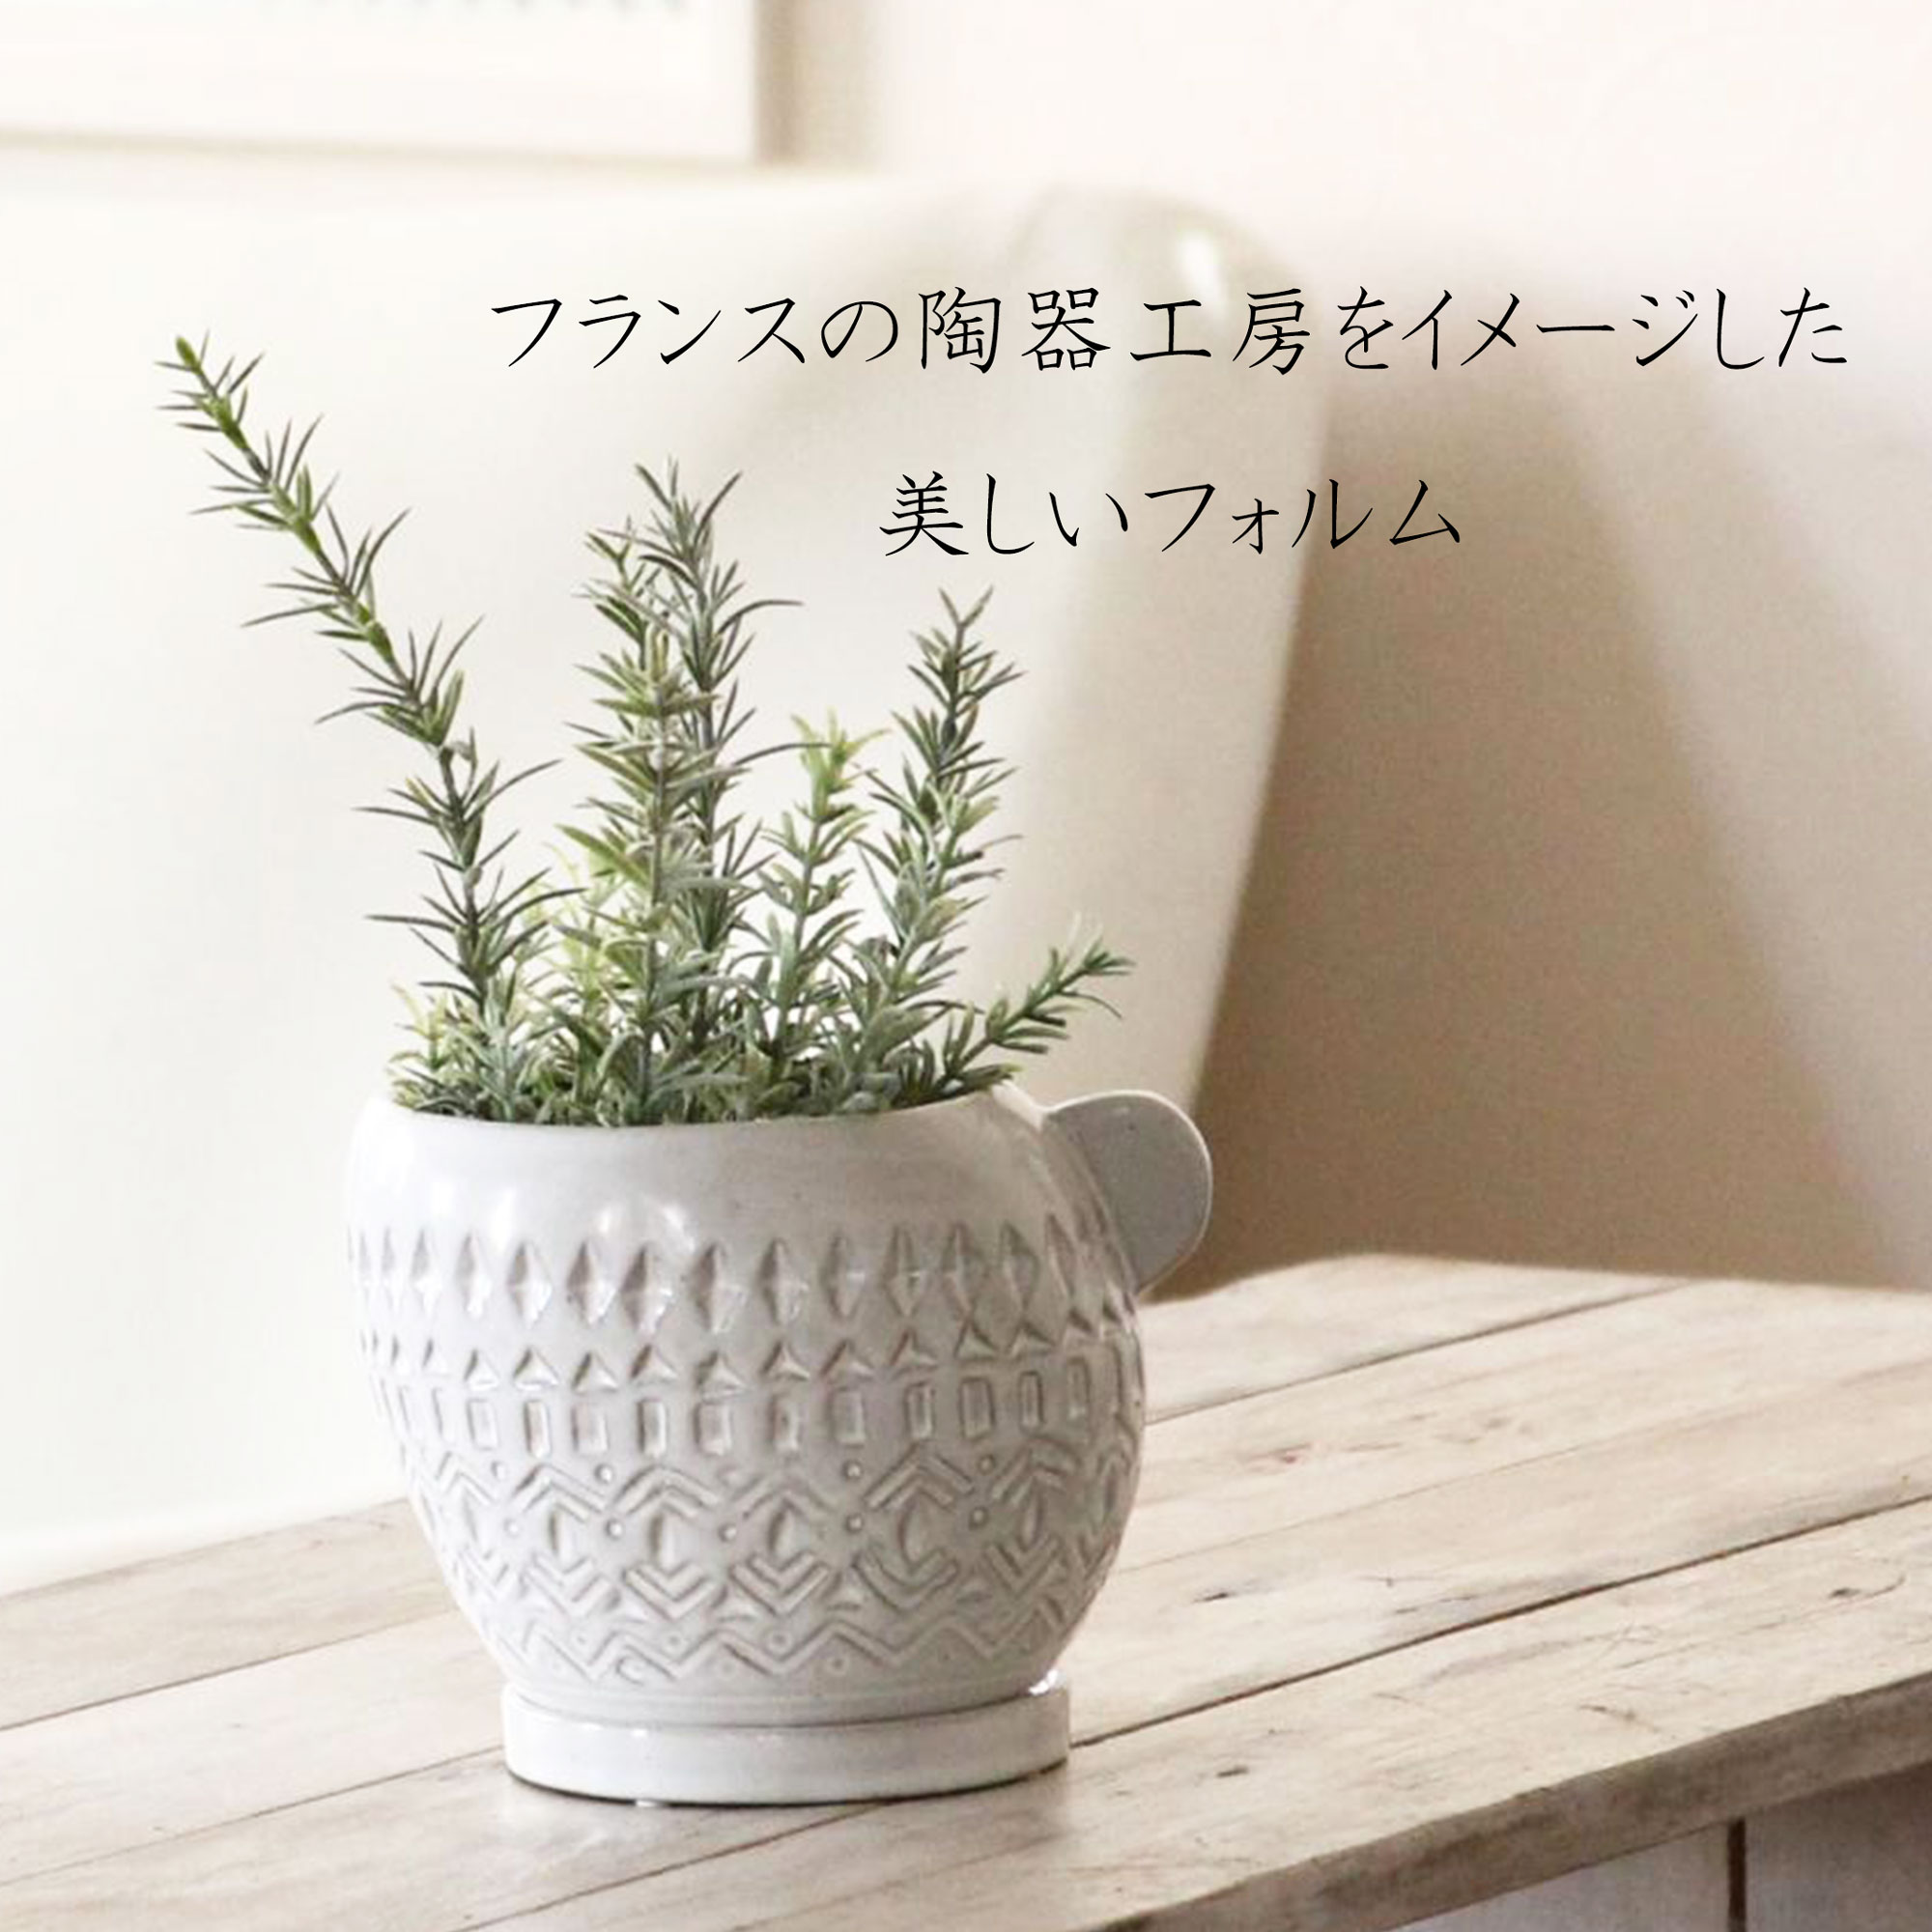 【フラワーベース/花瓶】ポッテワンハンドルプランター